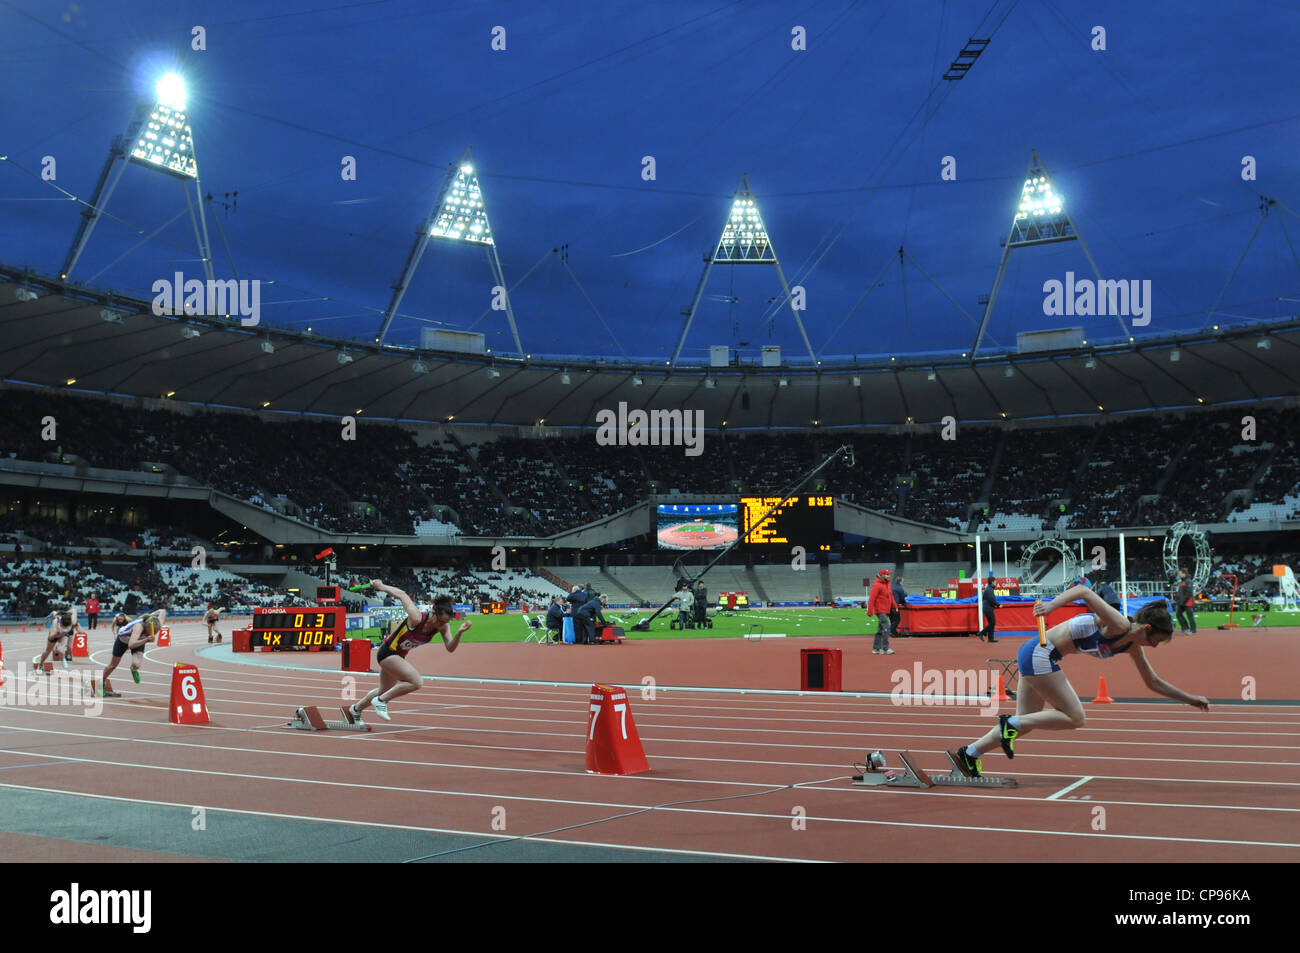 Stade d'athlétisme des Jeux olympiques 2012, Londres, Royaume-Uni. Relais 4 x 100 femmes à l'extérieur VISA BUCS Championnats mondiaux d'athlétisme. 05 Mai 2012 Banque D'Images